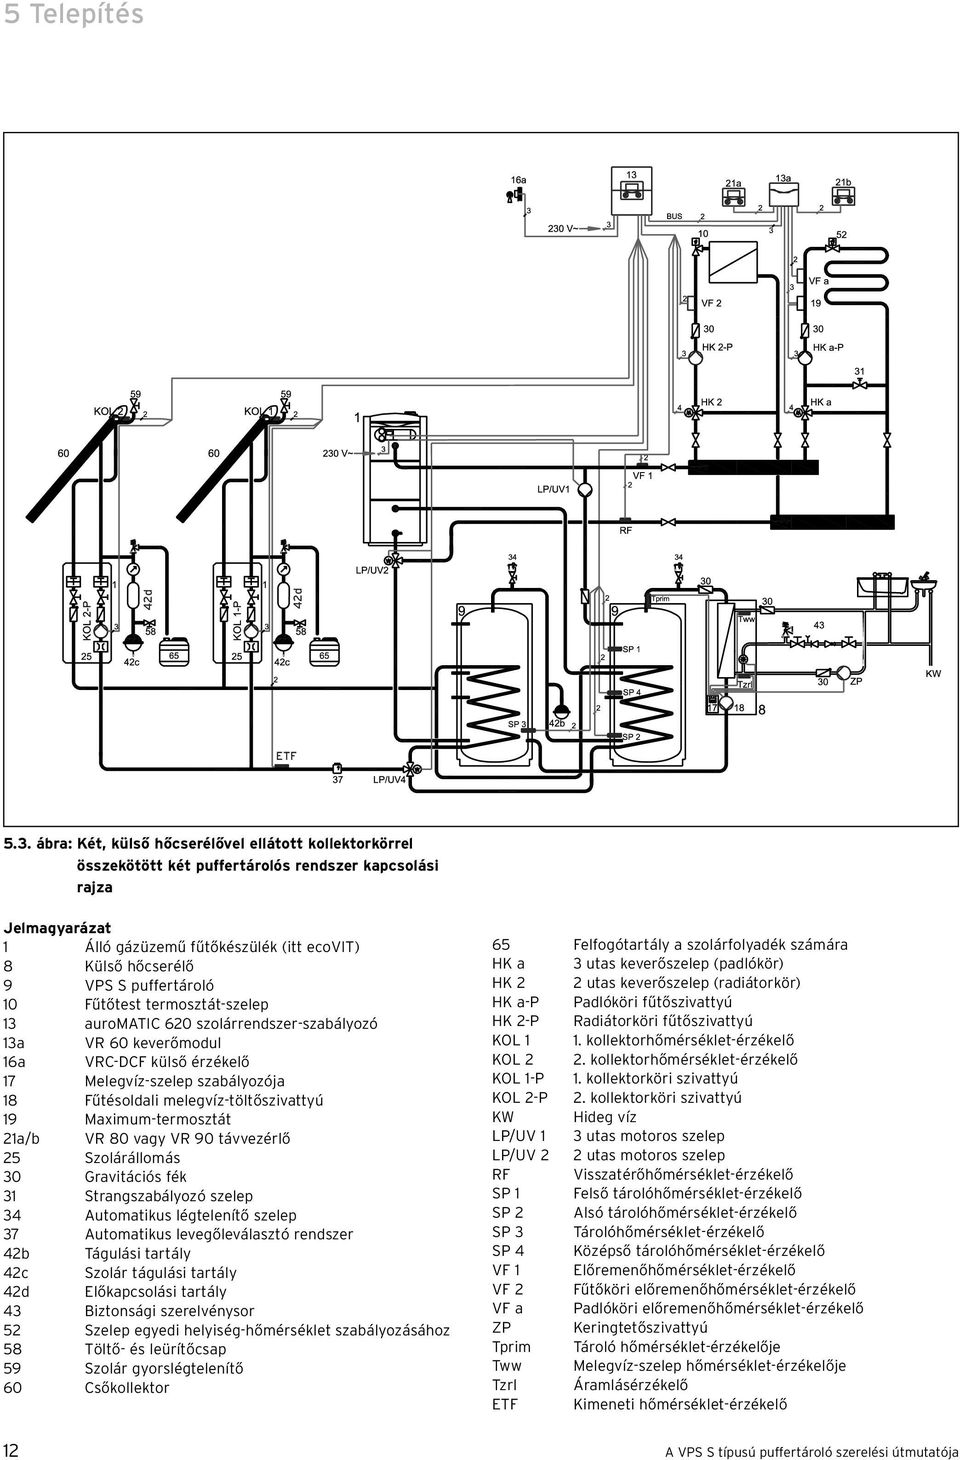 puffertároló 10 Fűtőtest termosztát-szelep 13 auromatic 620 szolárrendszer-szabályozó 13a VR 60 keverőmodul 16a VRC-DCF külső érzékelő 17 Melegvíz-szelep szabályozója 18 Fűtésoldali